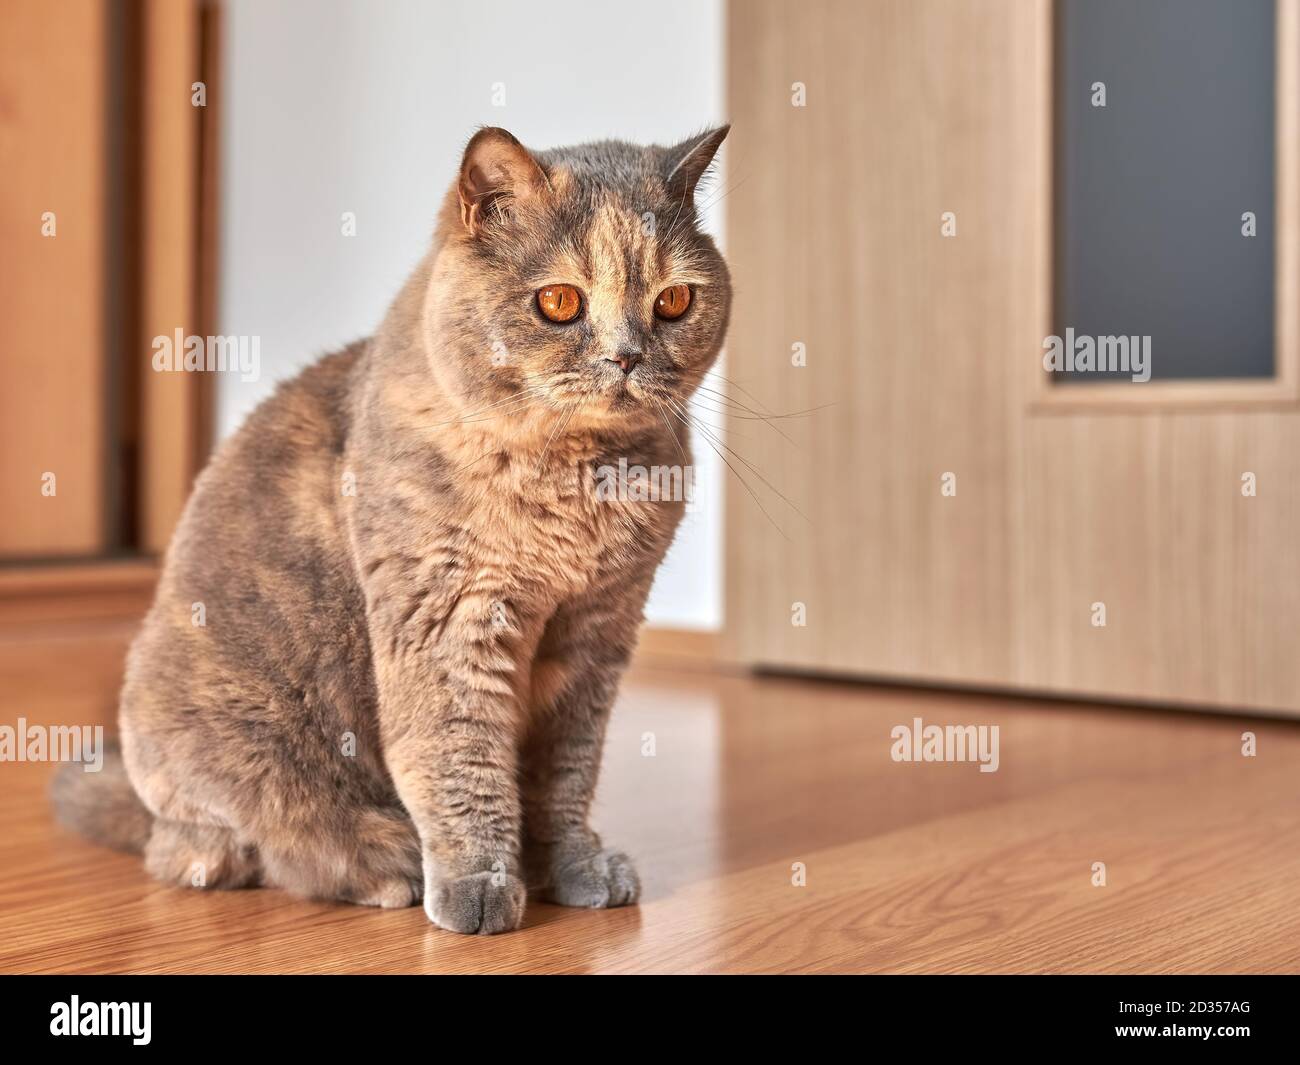 Photo d'un chat de shorthair britannique avec de grands yeux. Elle est assise sur le plancher en bois dans une pièce avec la porte fermée. Banque D'Images